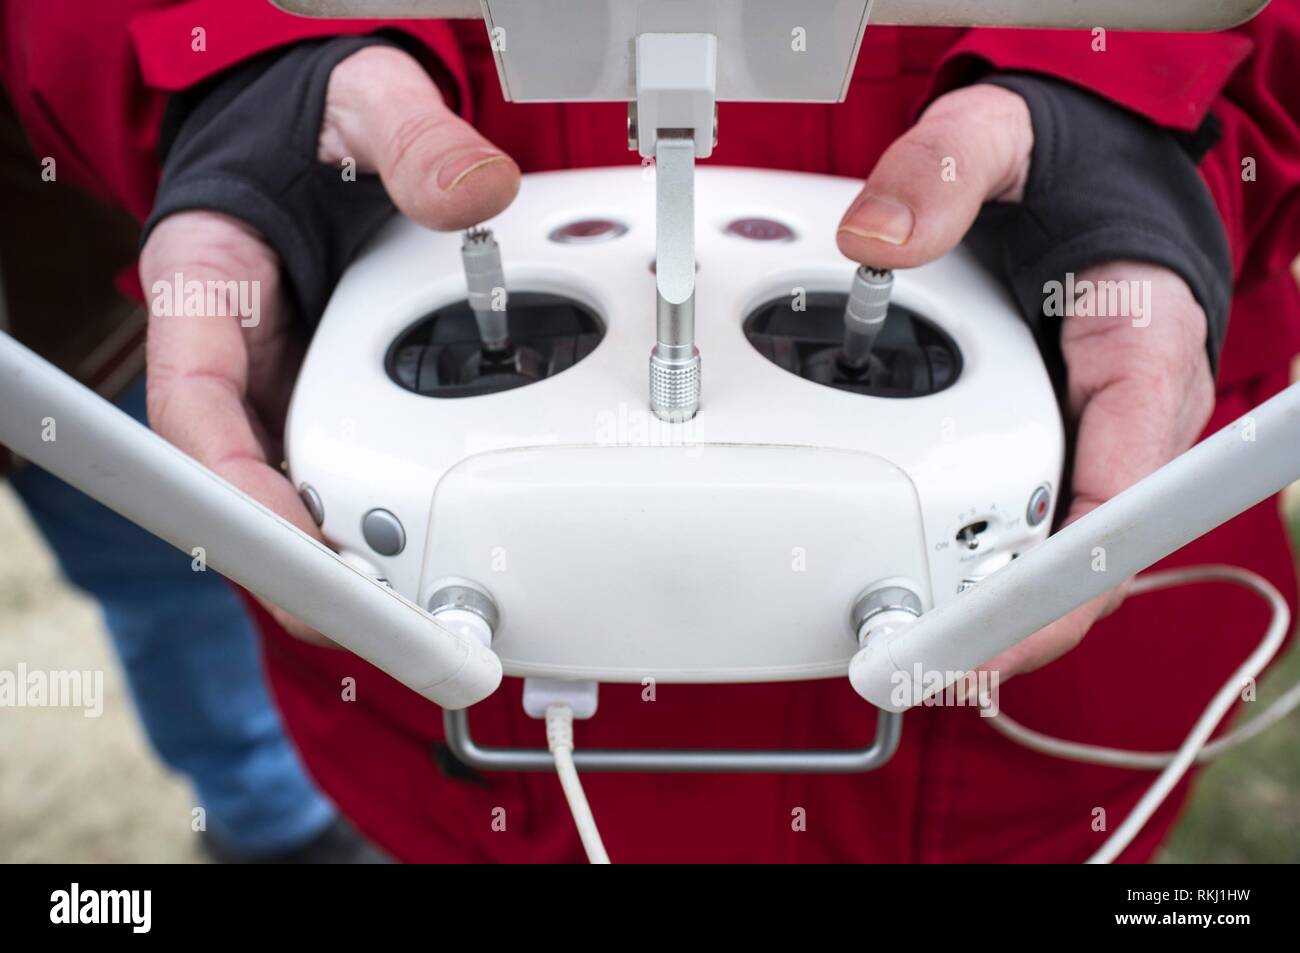 Maniobra dron piloto en el control remoto. Mover la palanca de control izquierda para el tono. Foto de stock